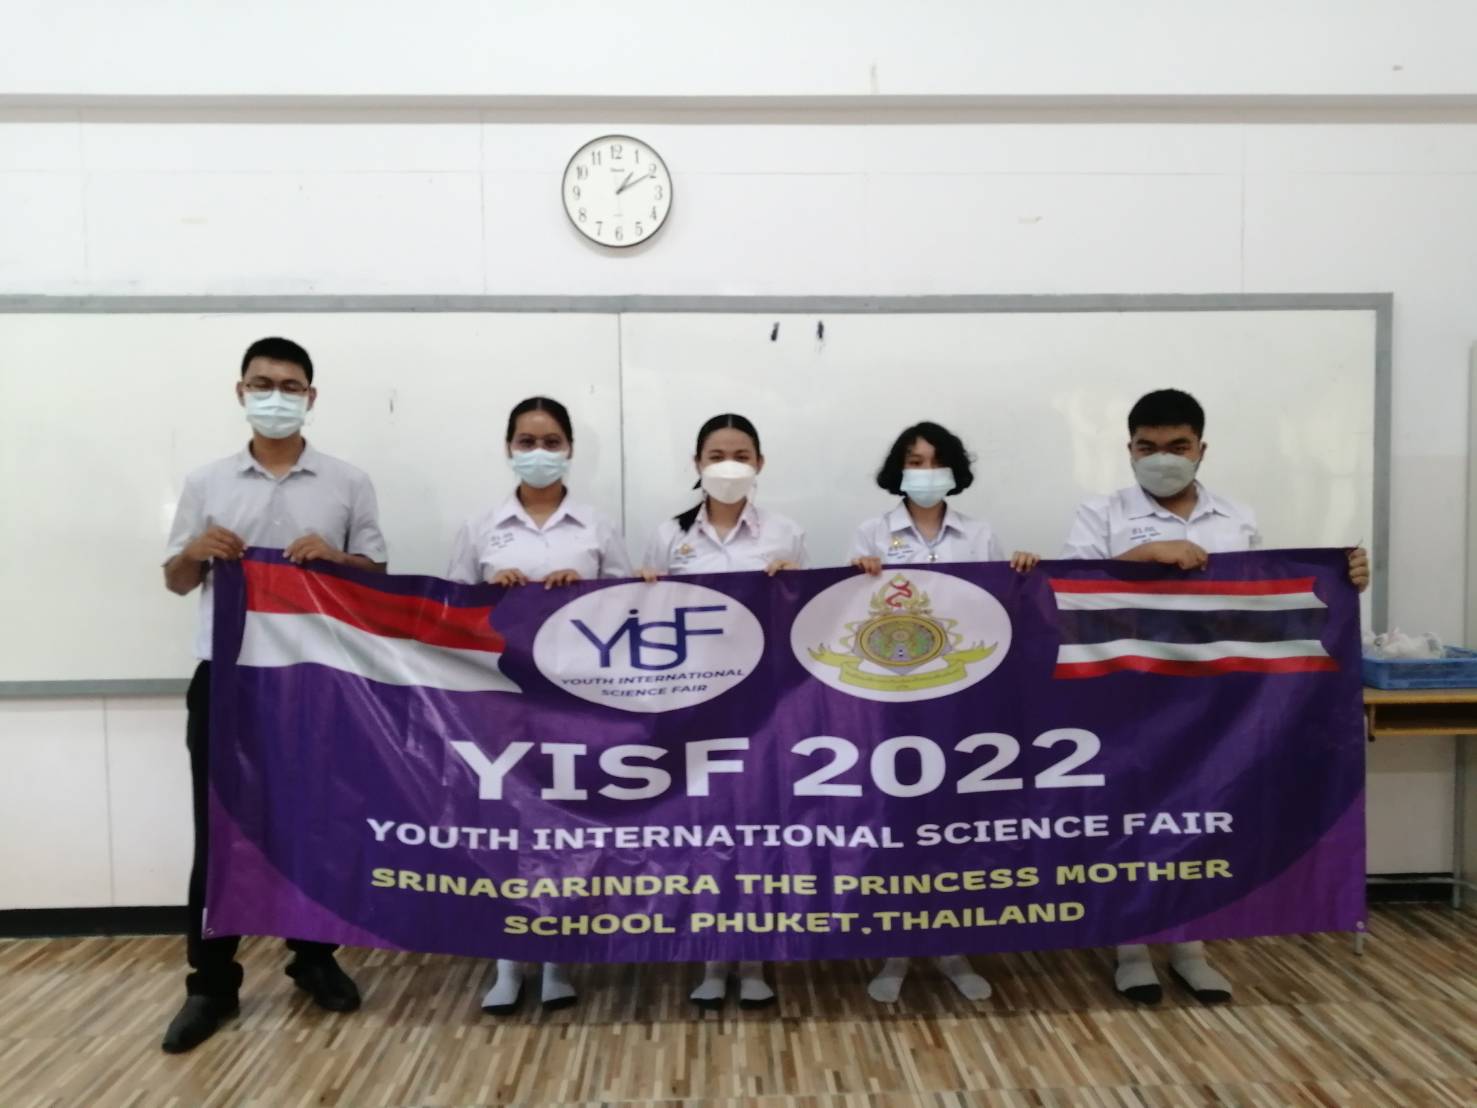 ขอแสดงความยินดีกับ นักเรียน ห้องเรียนโครงการพิเศษ SMTE และ SMP ผลการแข่งขันโครงงาน นานาชาติ รายการ Youth International Science Fair (YISF) 2022 ได้รับรางวัลเหรียญเงิน